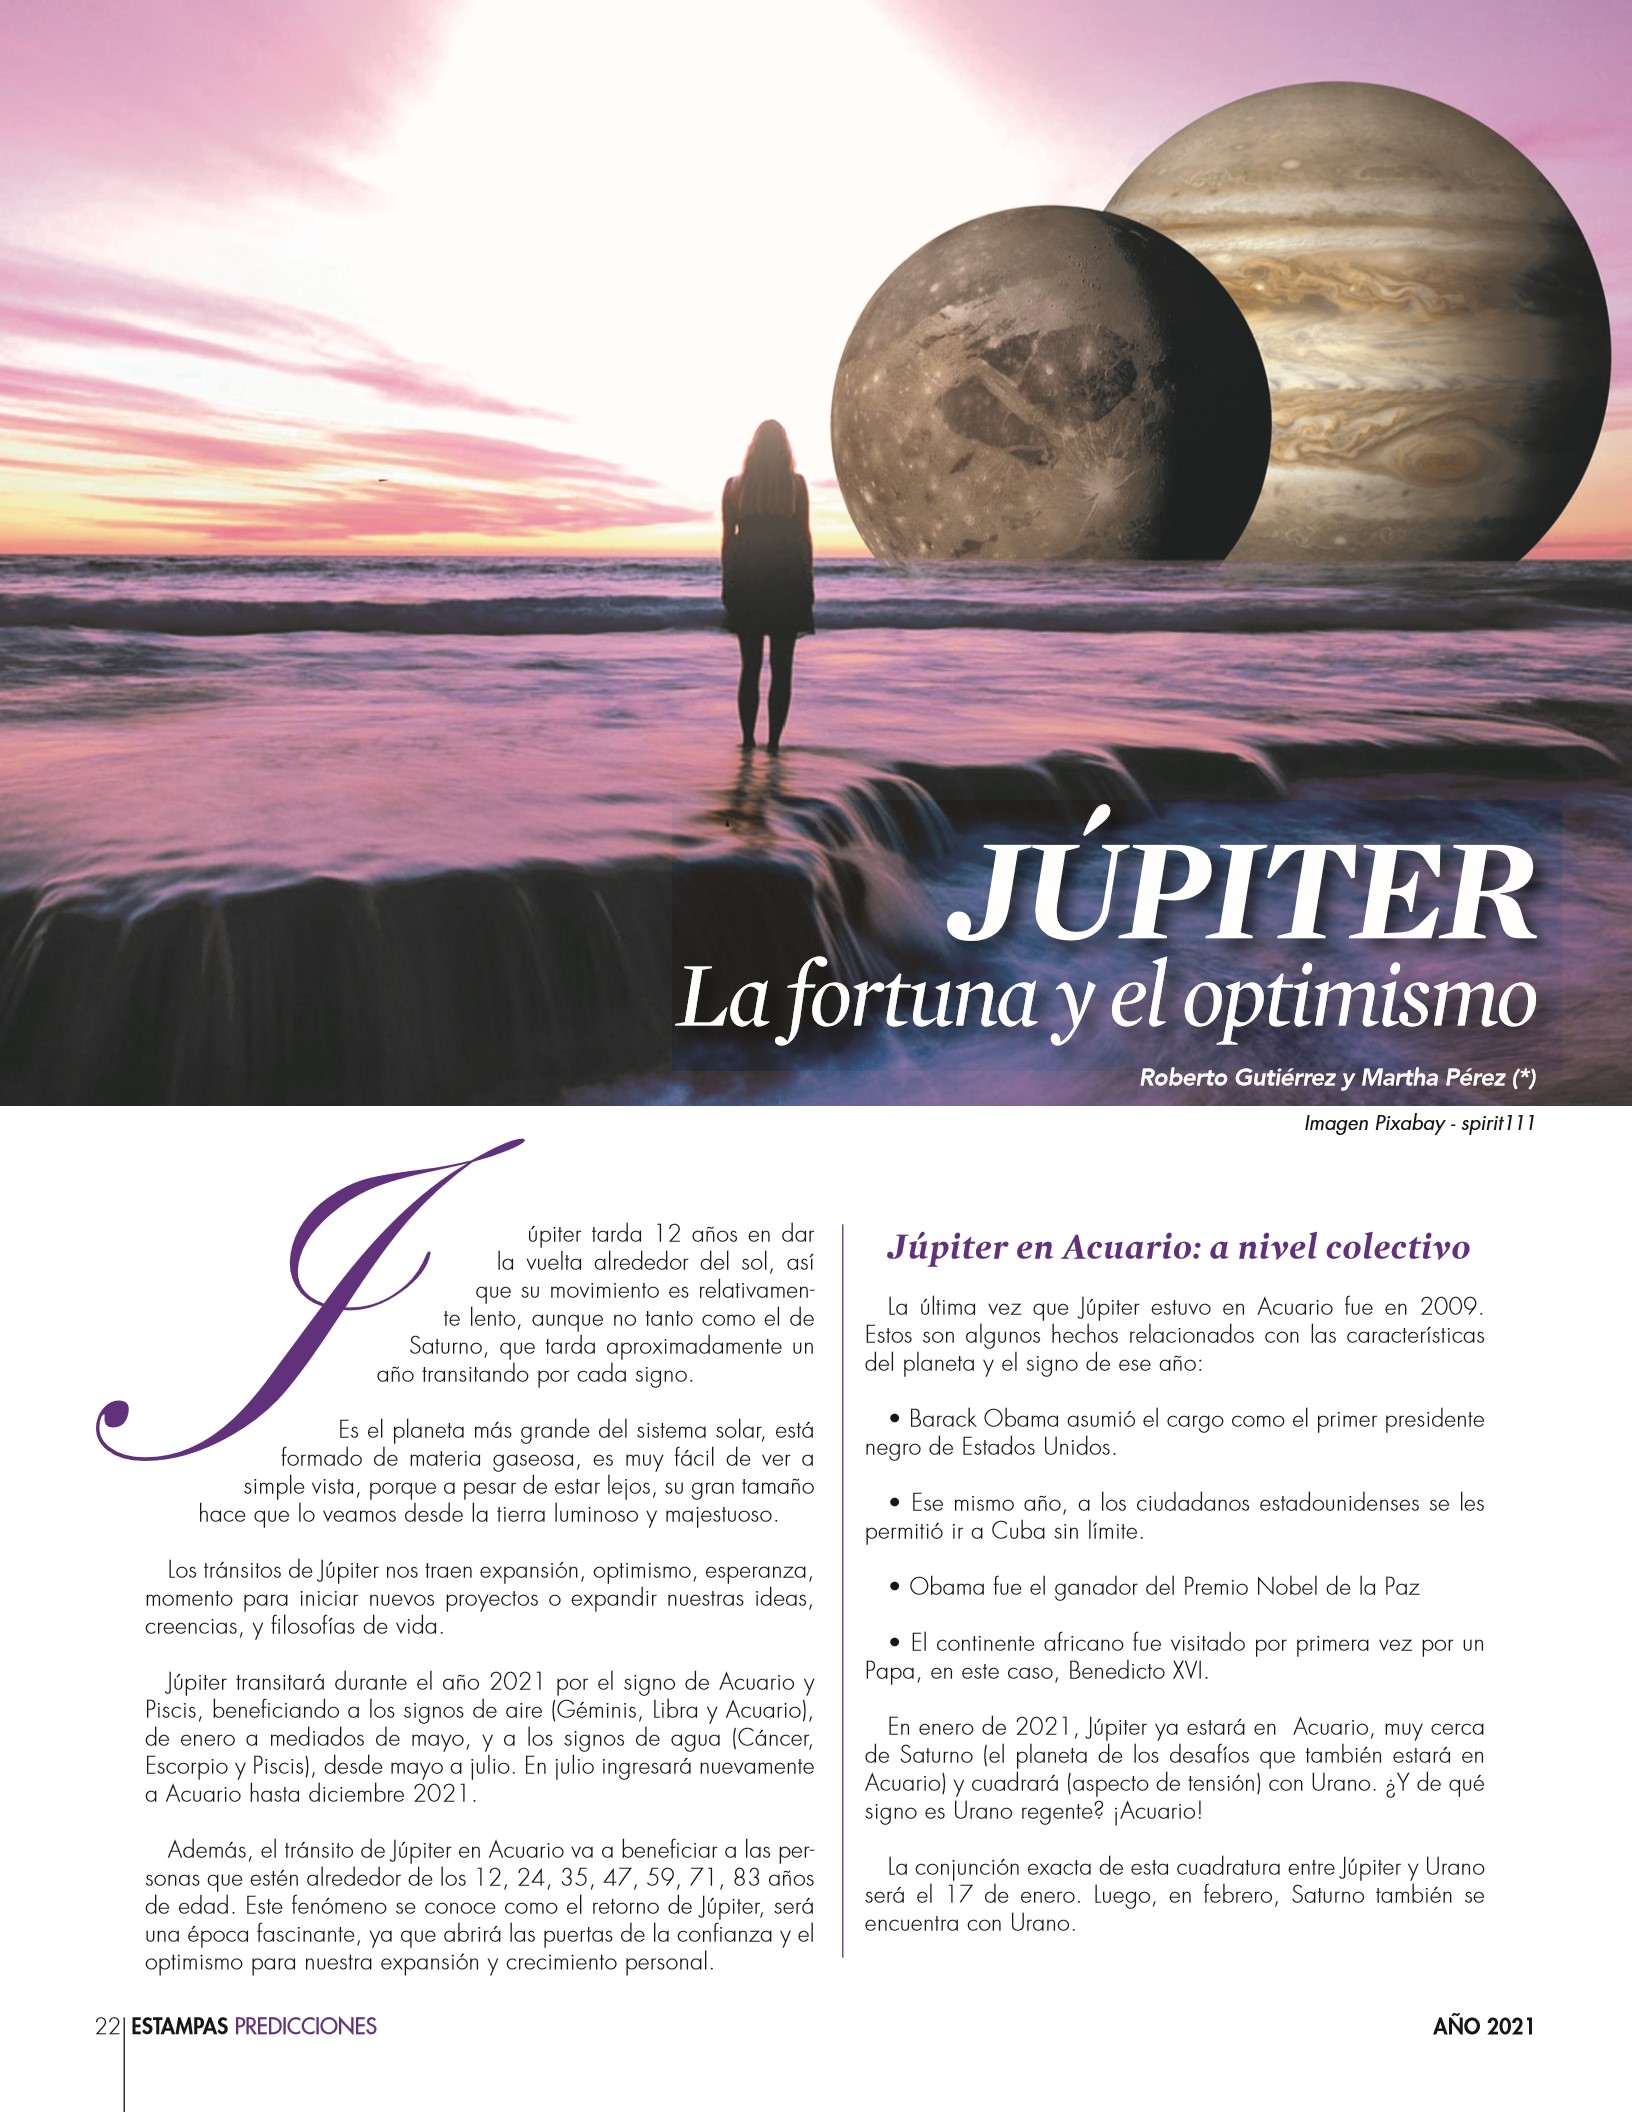 28-REV Roberto Gutiérrez y Martha Pérez - Júpiter: La fortuna y el optimismo